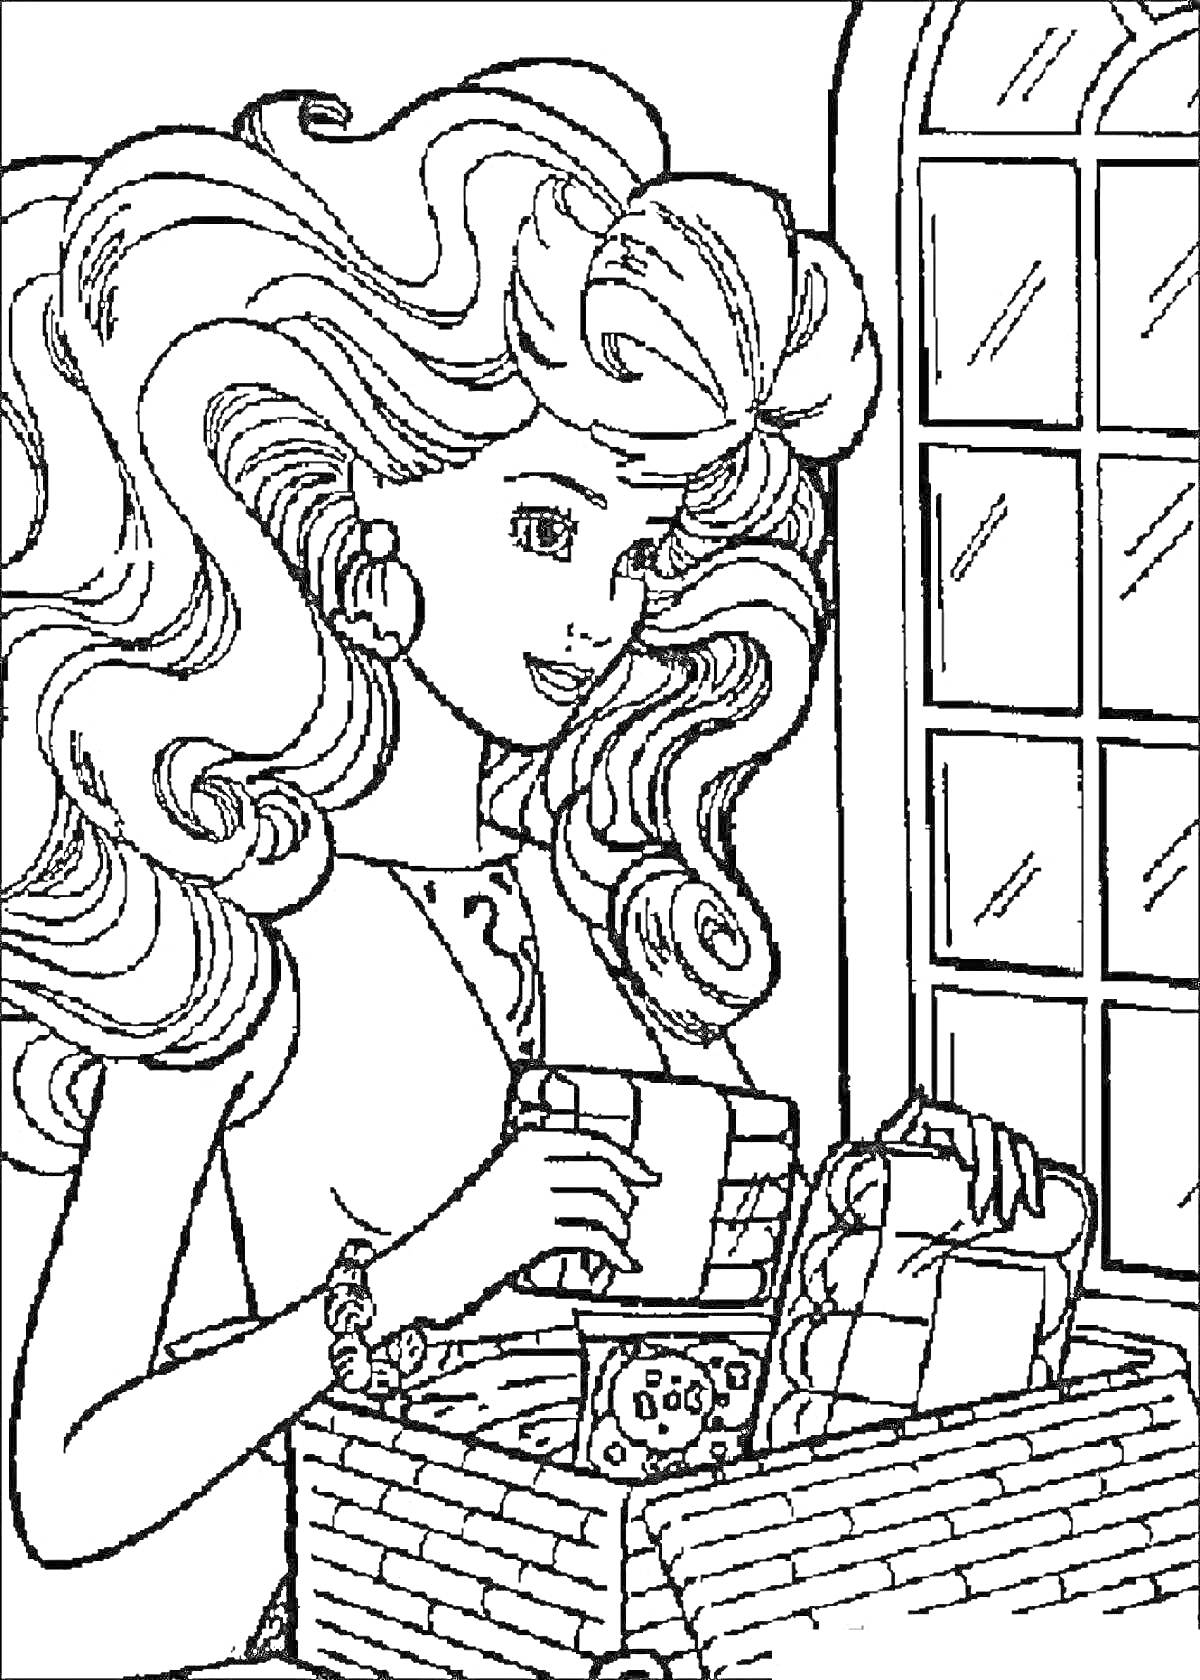 Раскраска Девушка с длинными вьющимися волосами и большими серьгами, держащая подарок у плетеной корзинки с другими подарками, на фоне окна